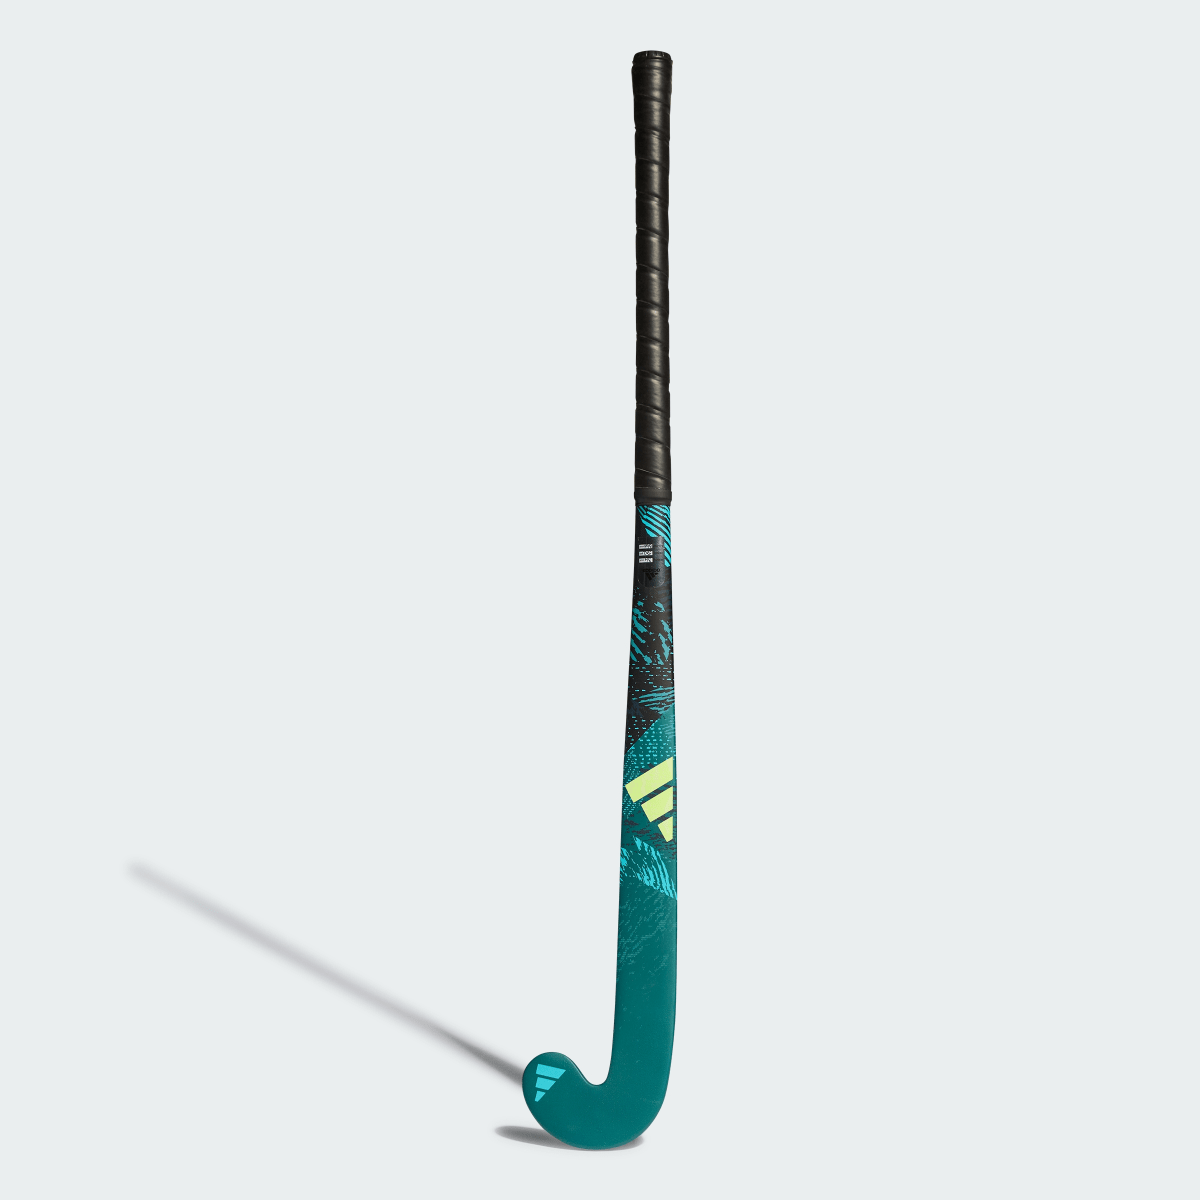 Adidas Youngstar.9 61 cm Field Hockey Stick. 3